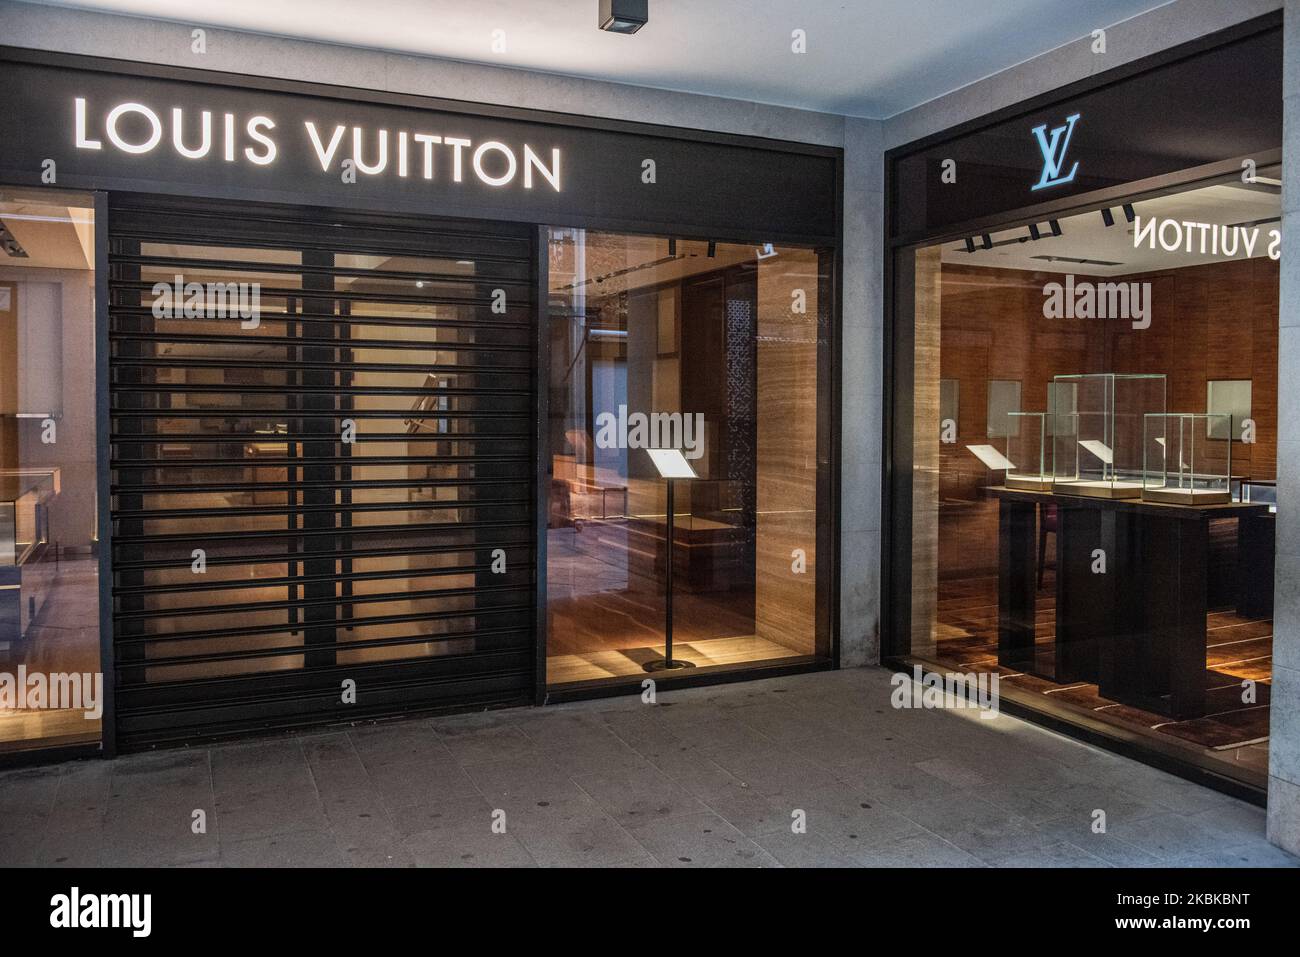 Verona Italy June 12 Louis Vuitton Stock Photo 459867070